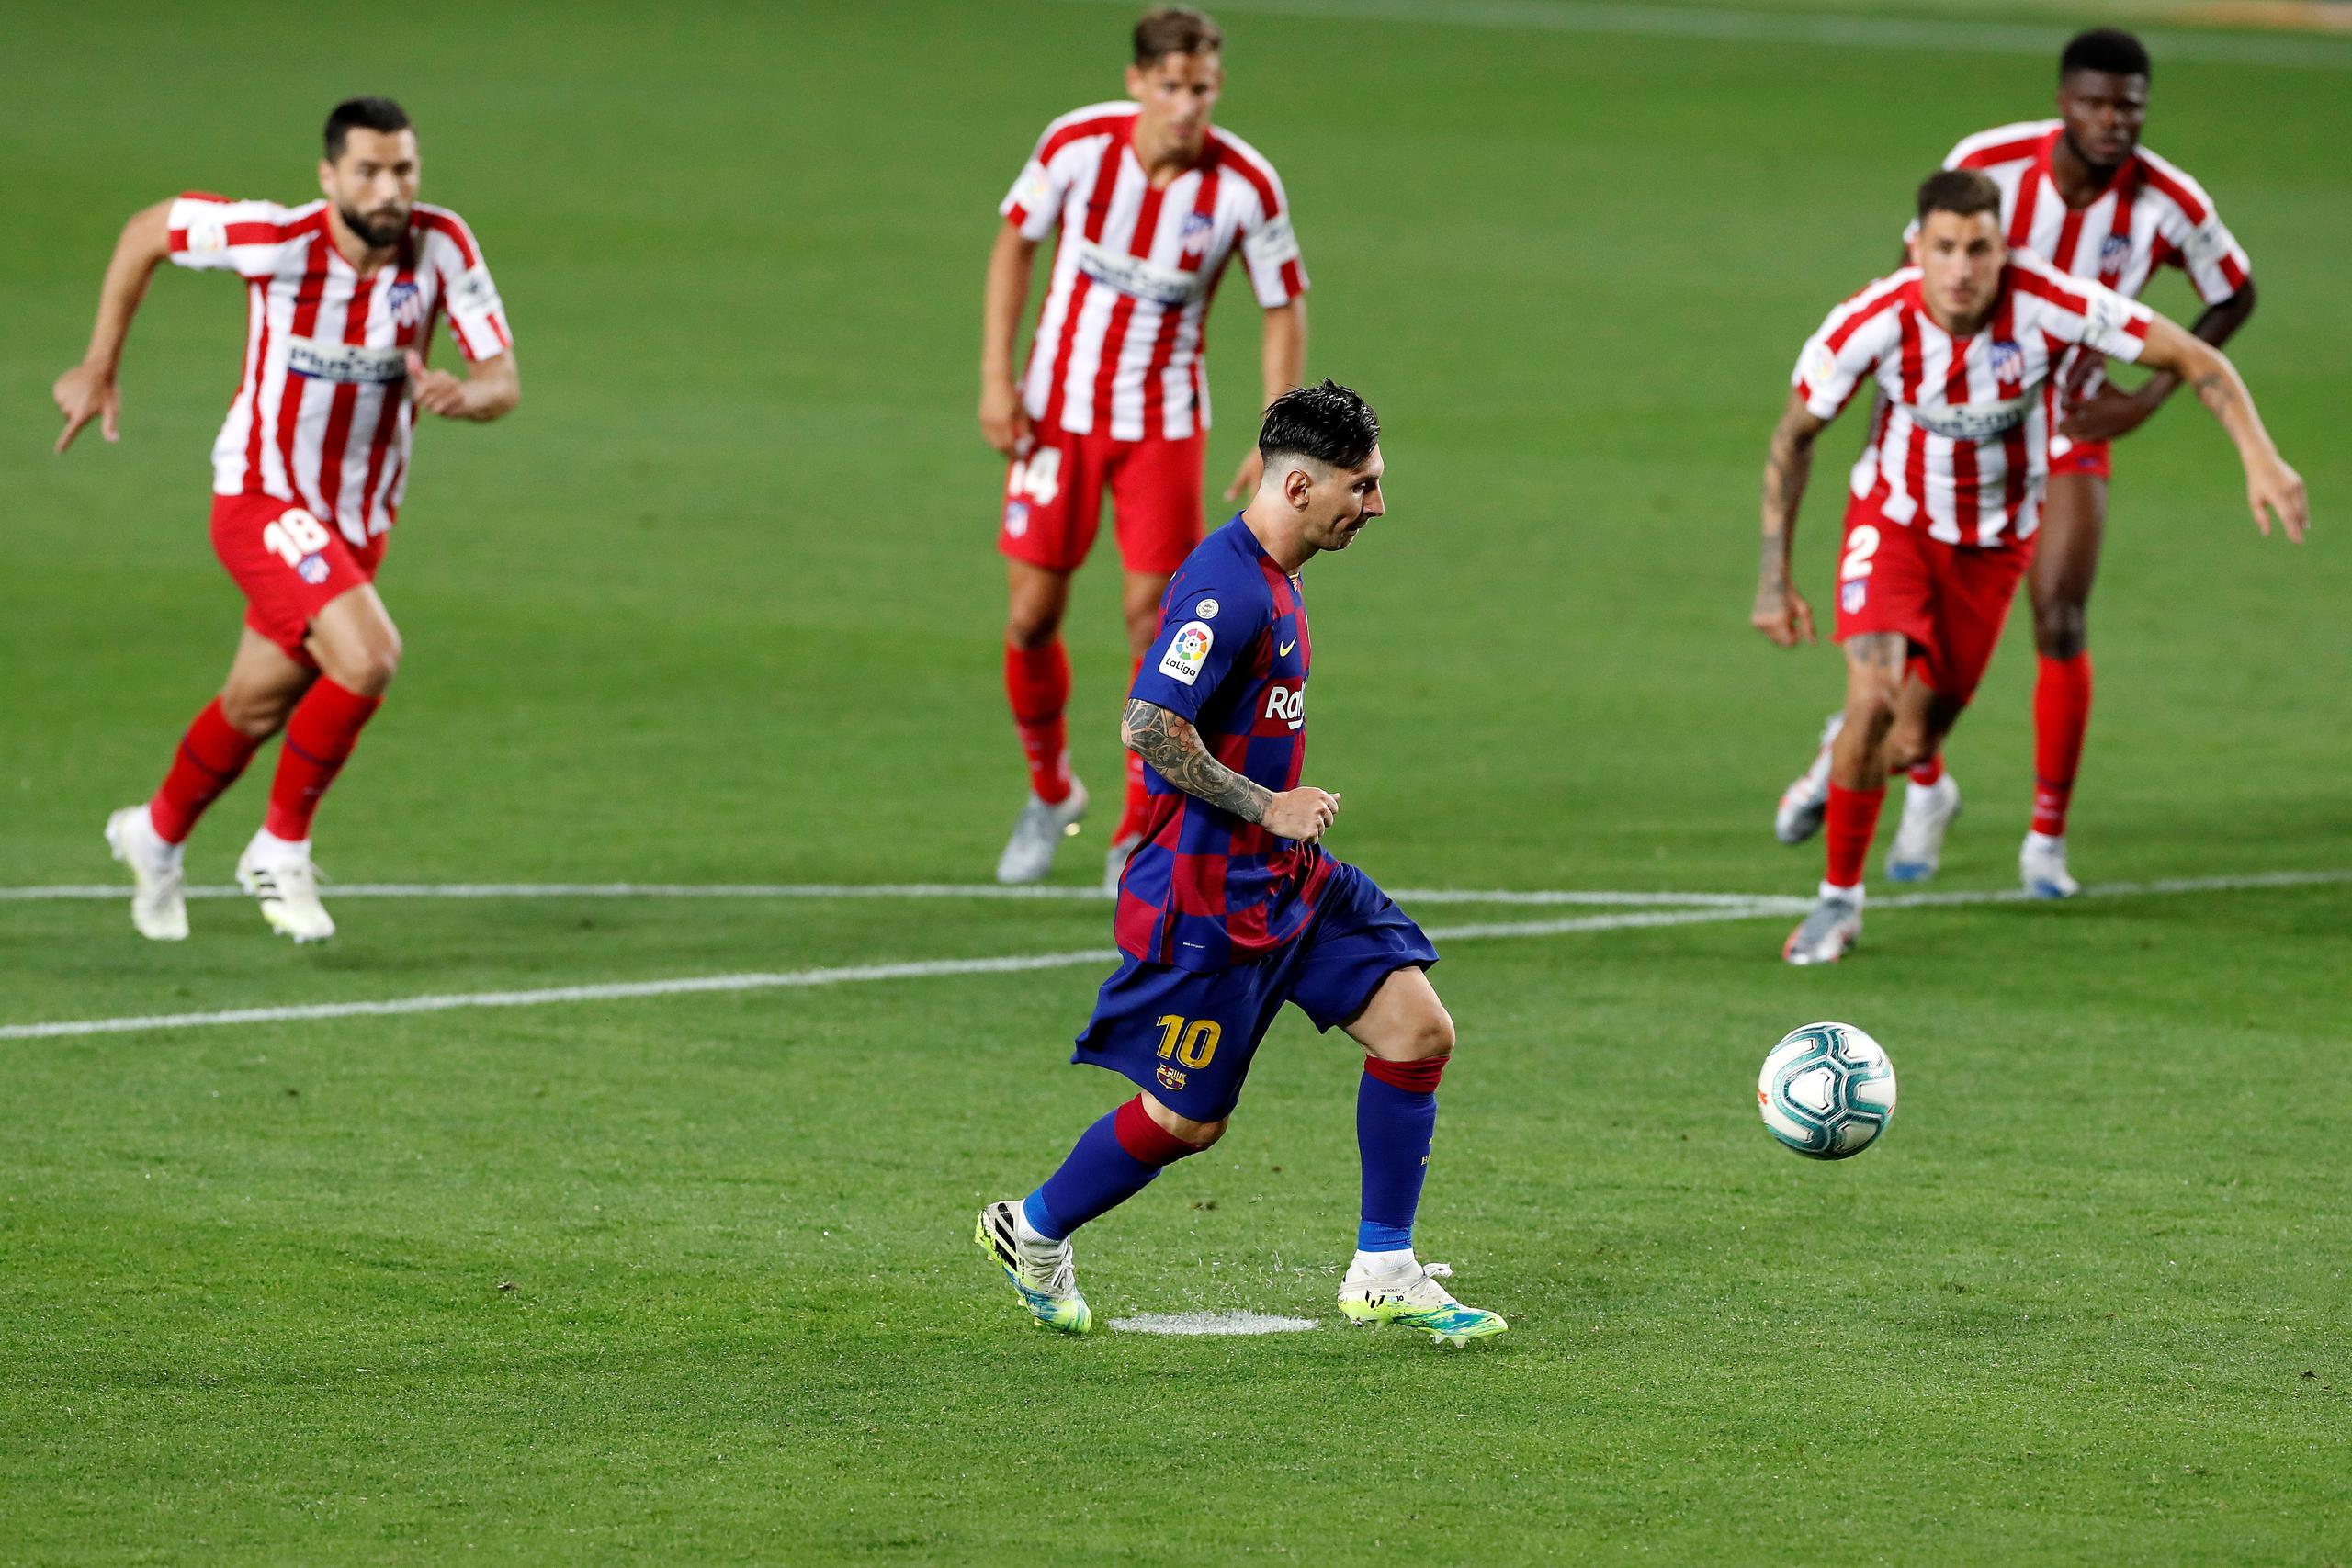 El delantero del FC Barcelona, Leo Messi, lanza el penalti que le dio el gol 700 con la camiseta del club español y de la selección argentina.